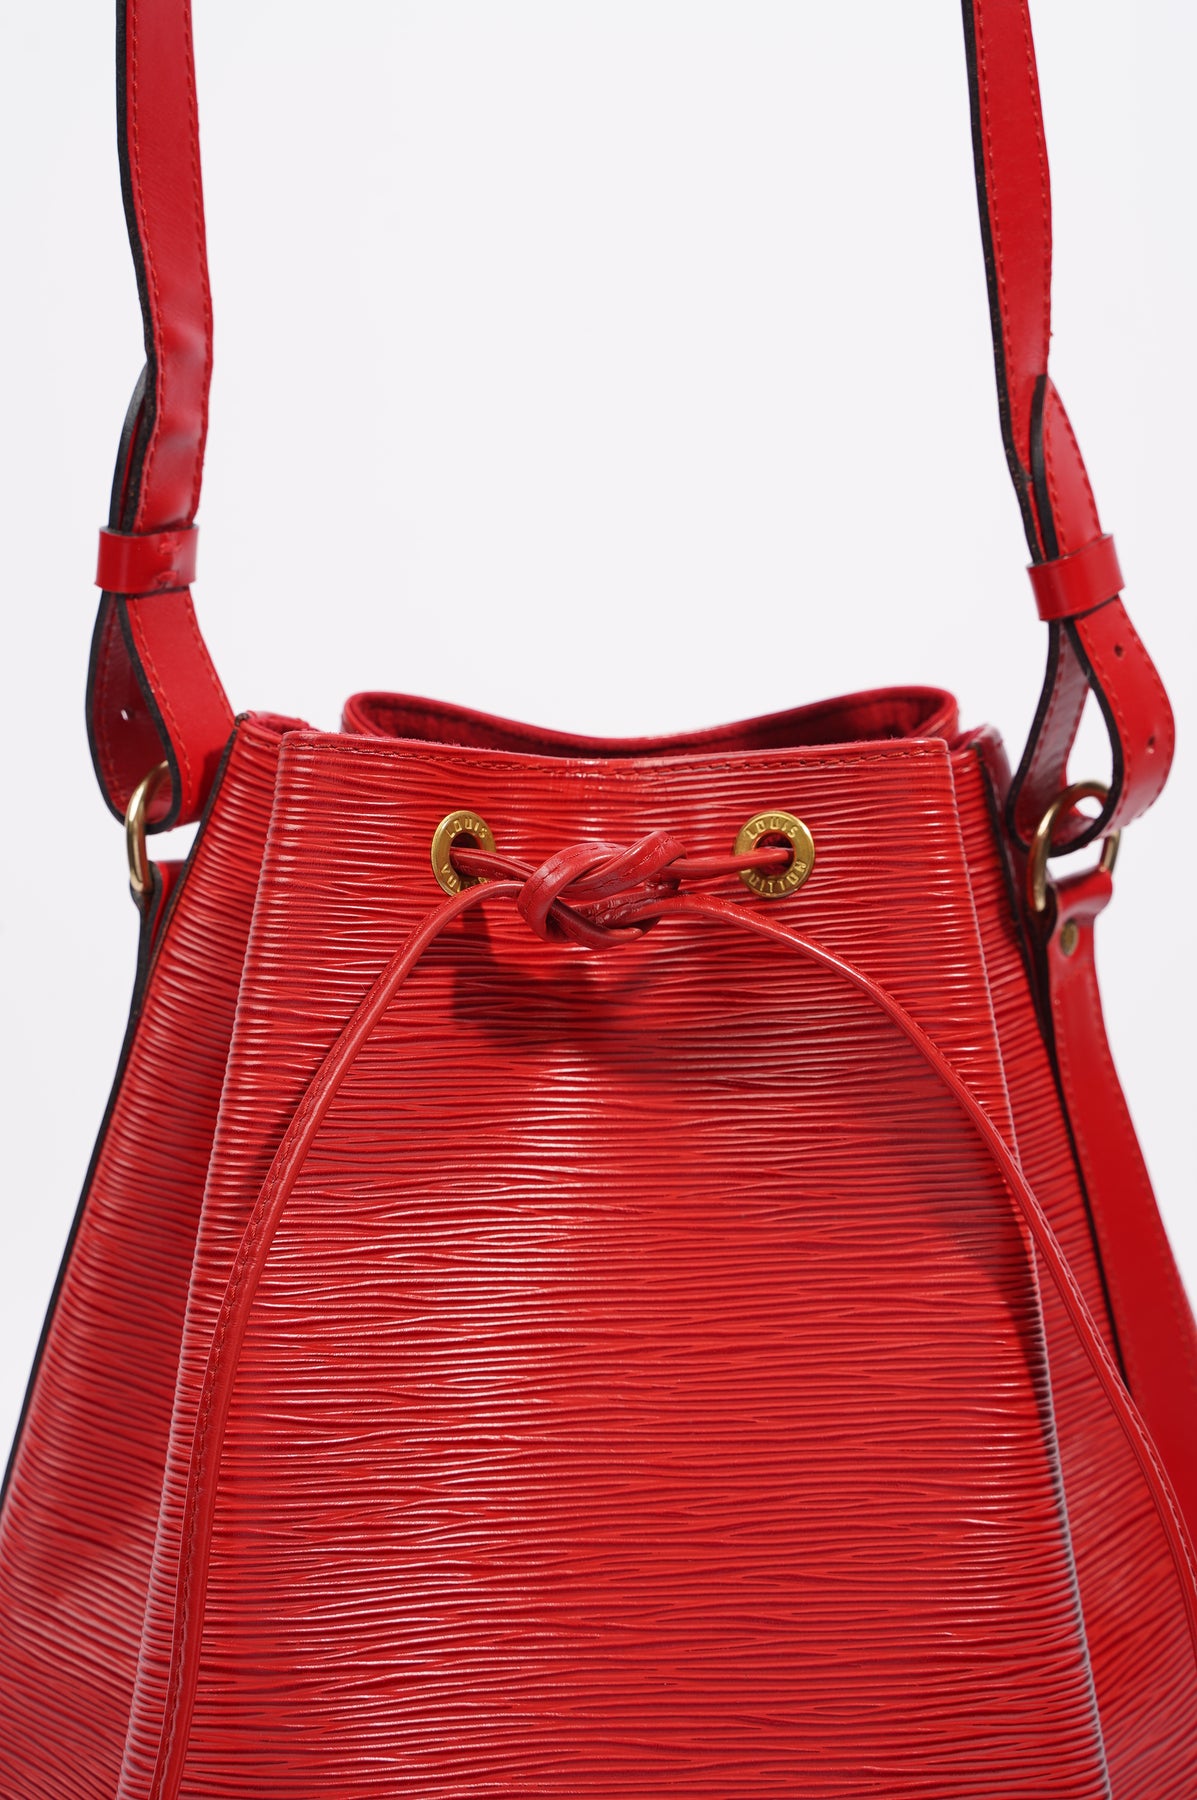 Lot - Louis Vuitton Lilac Epi Leather Noe Shoulder Bag Date Code